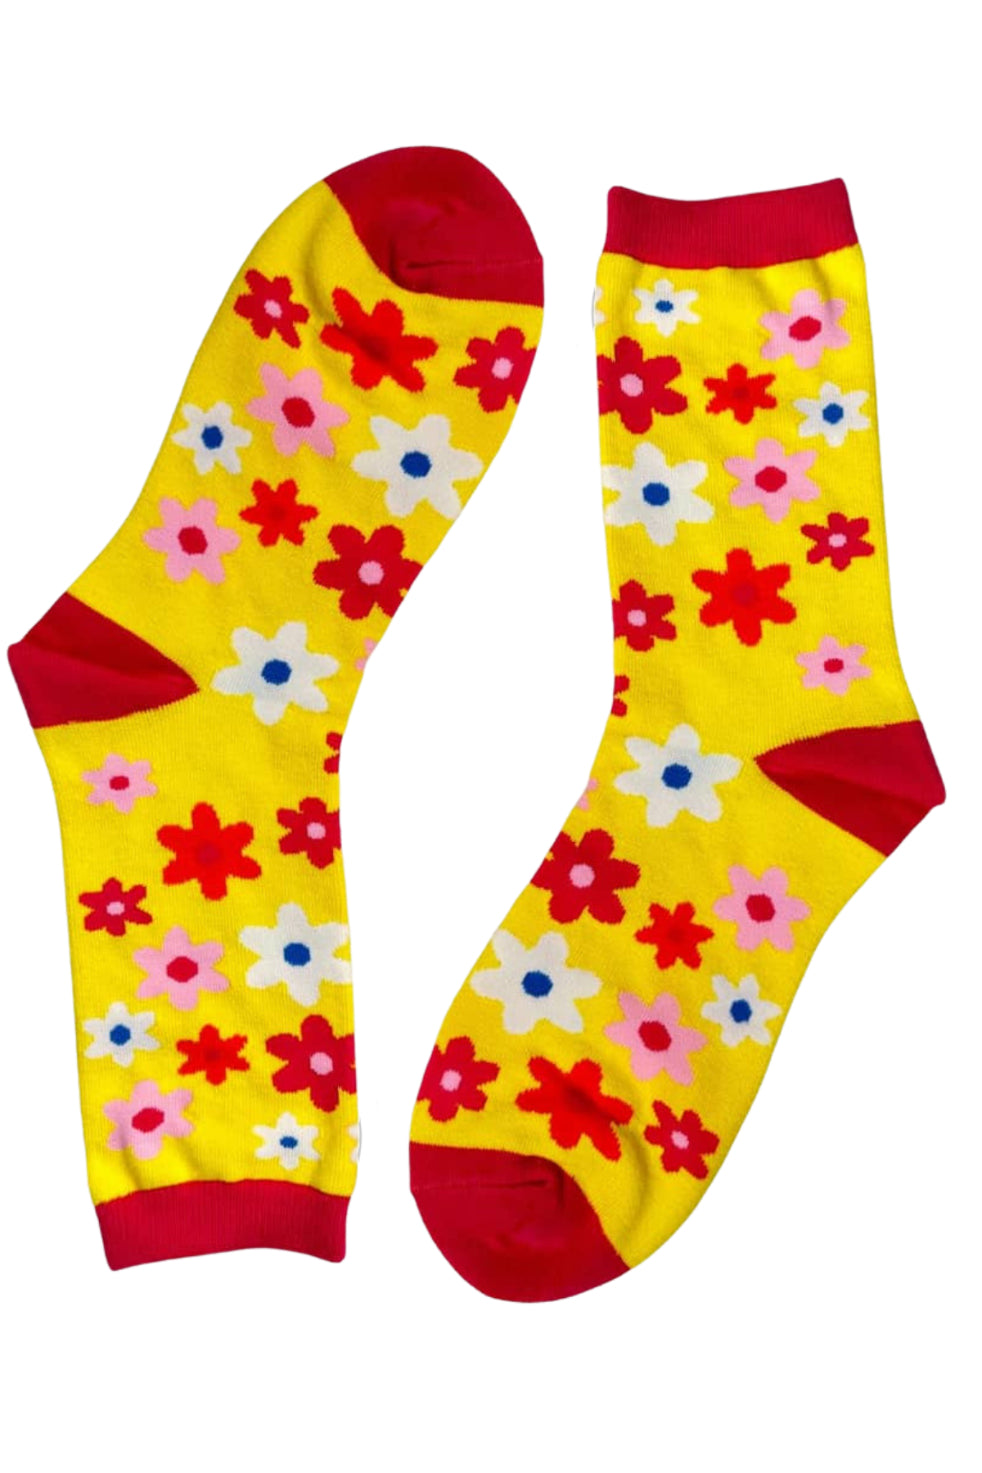 Daisy Crew Socks